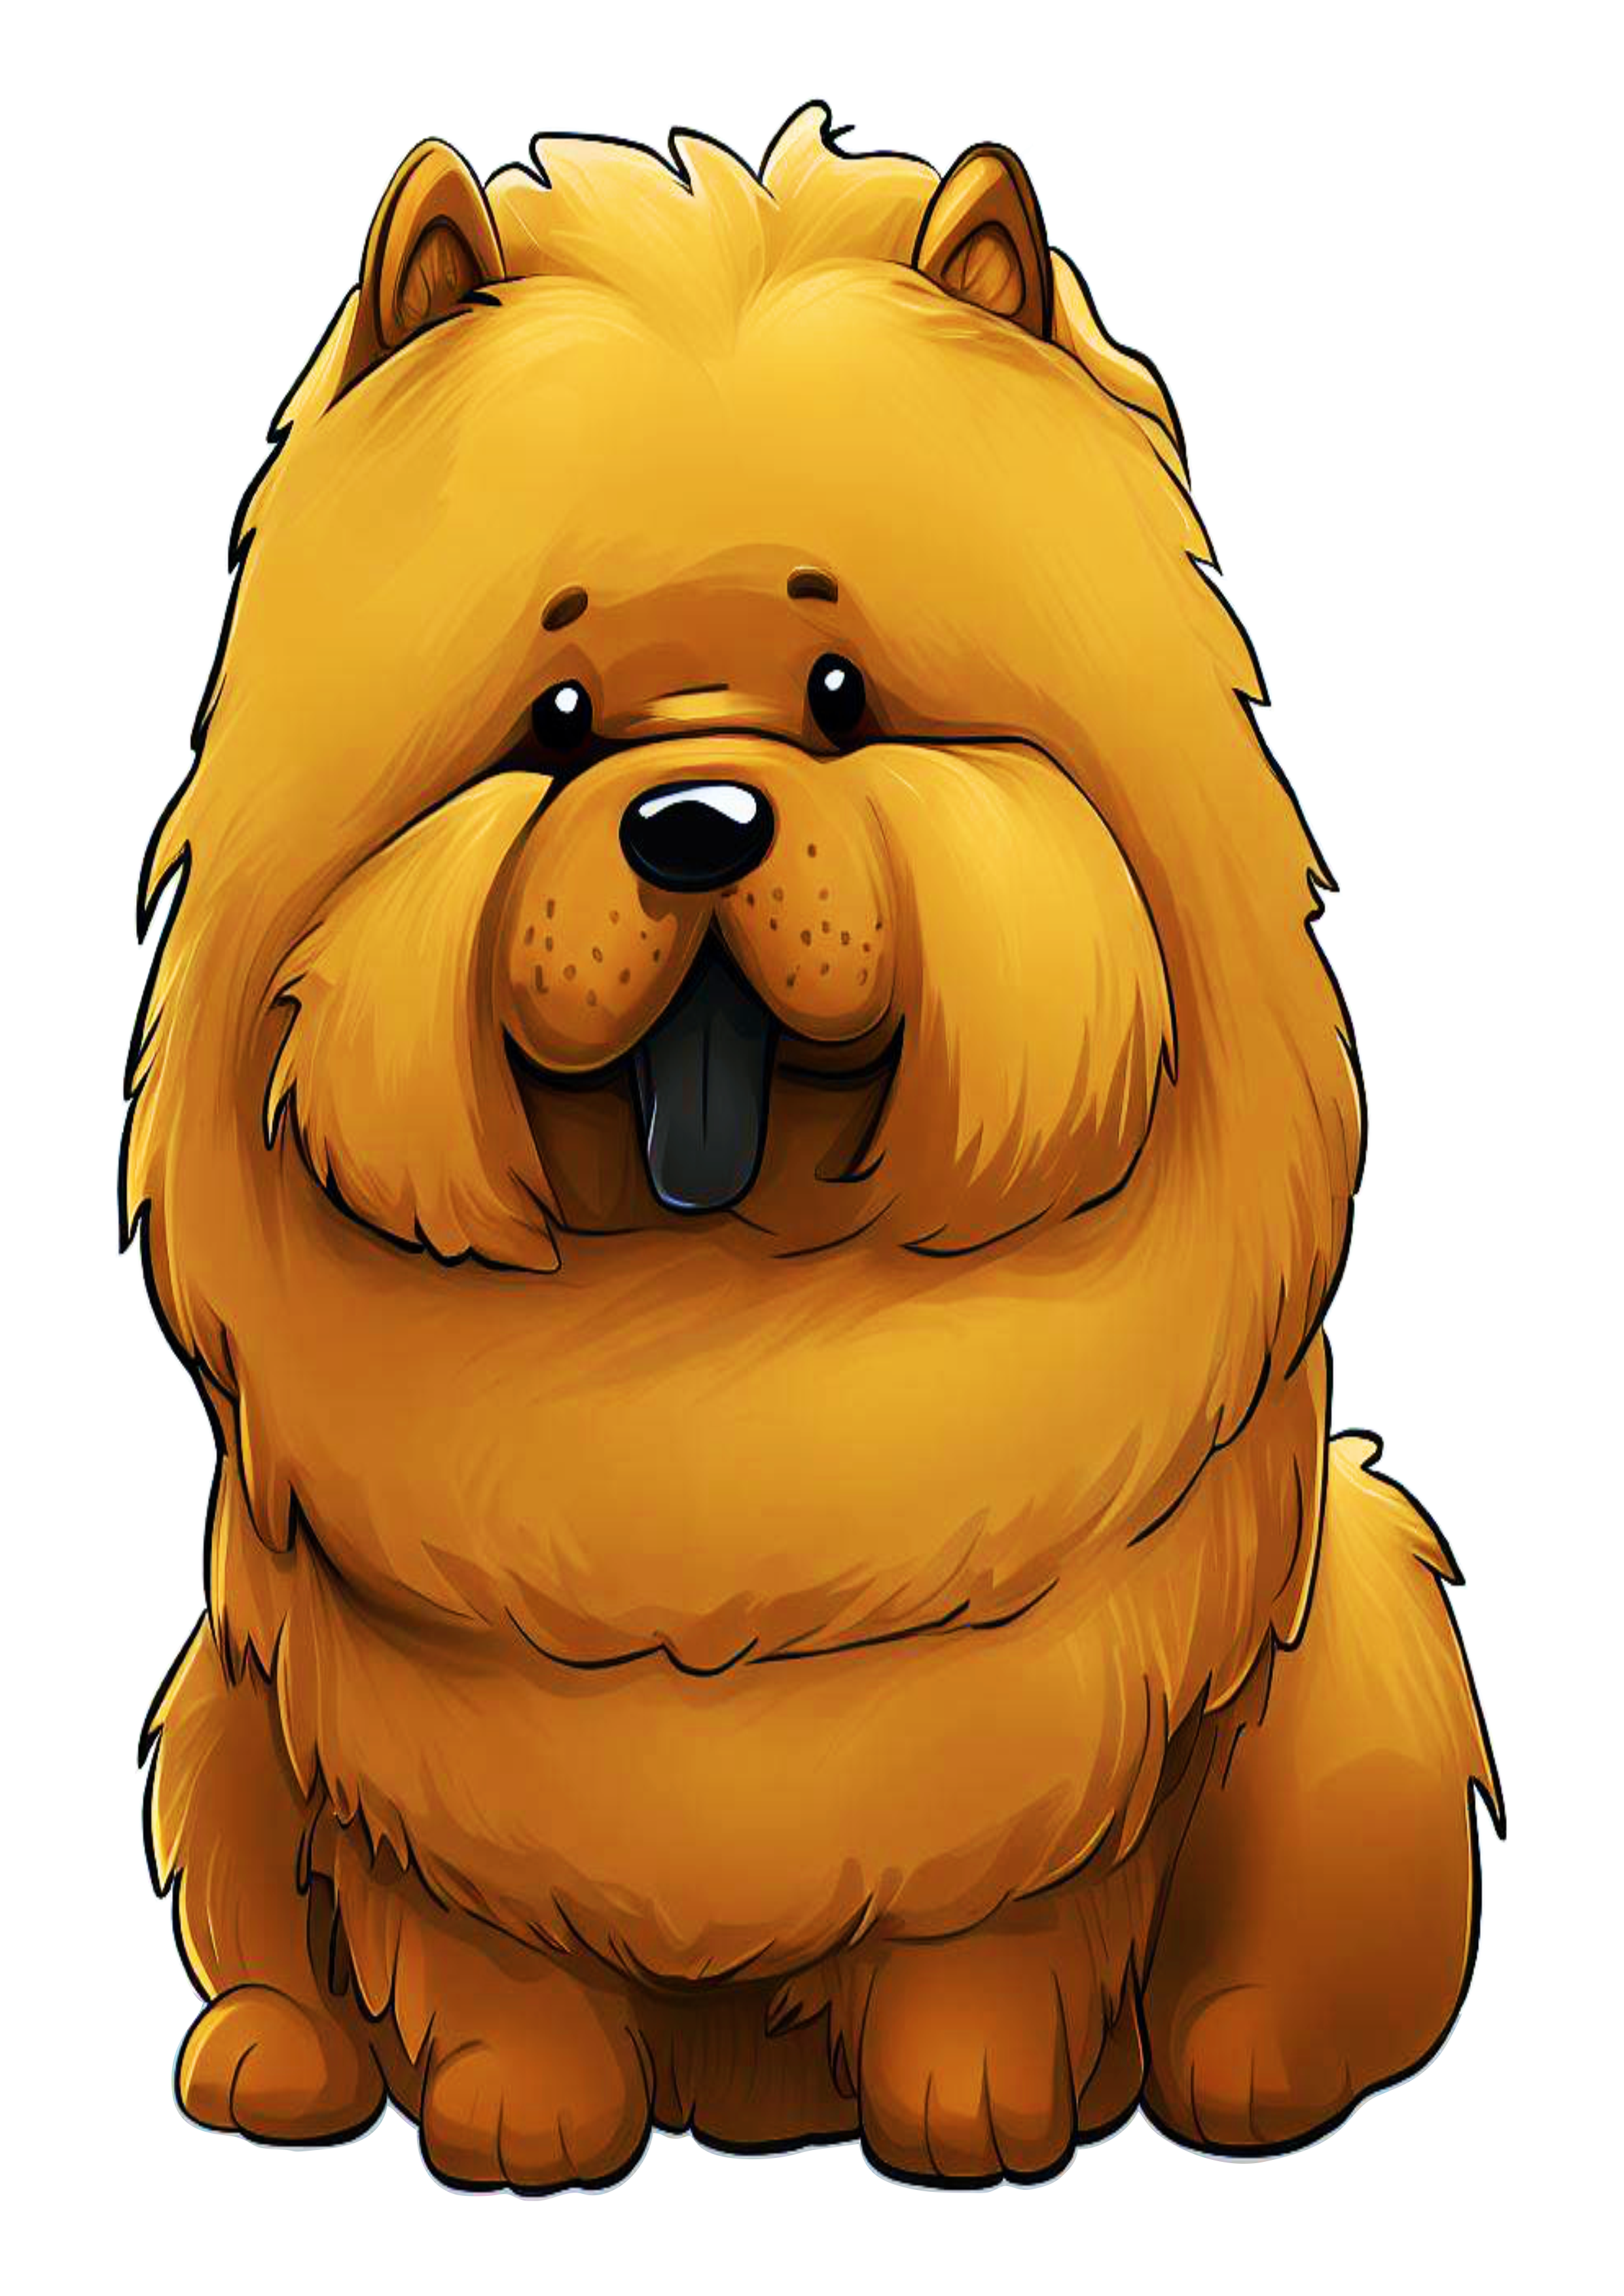 Cachorrinho chow chow lingua rocha fofinho cute desenho simples pet mascote peludo animalzinho caricatura petshop png